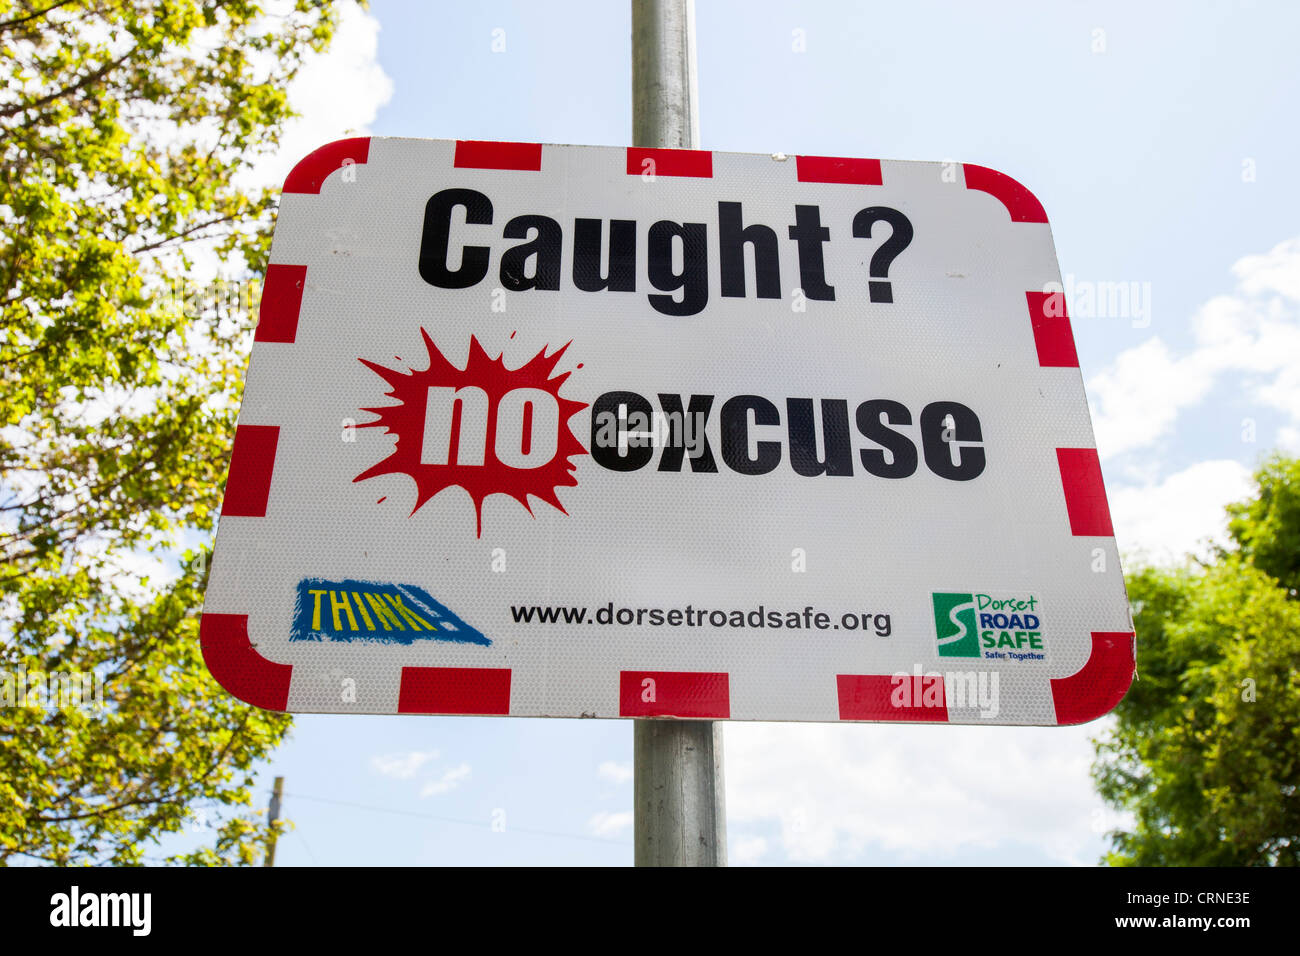 Una campaña de seguridad vial en Dorset, Reino Unido para luchar contra el exceso de velocidad. Foto de stock